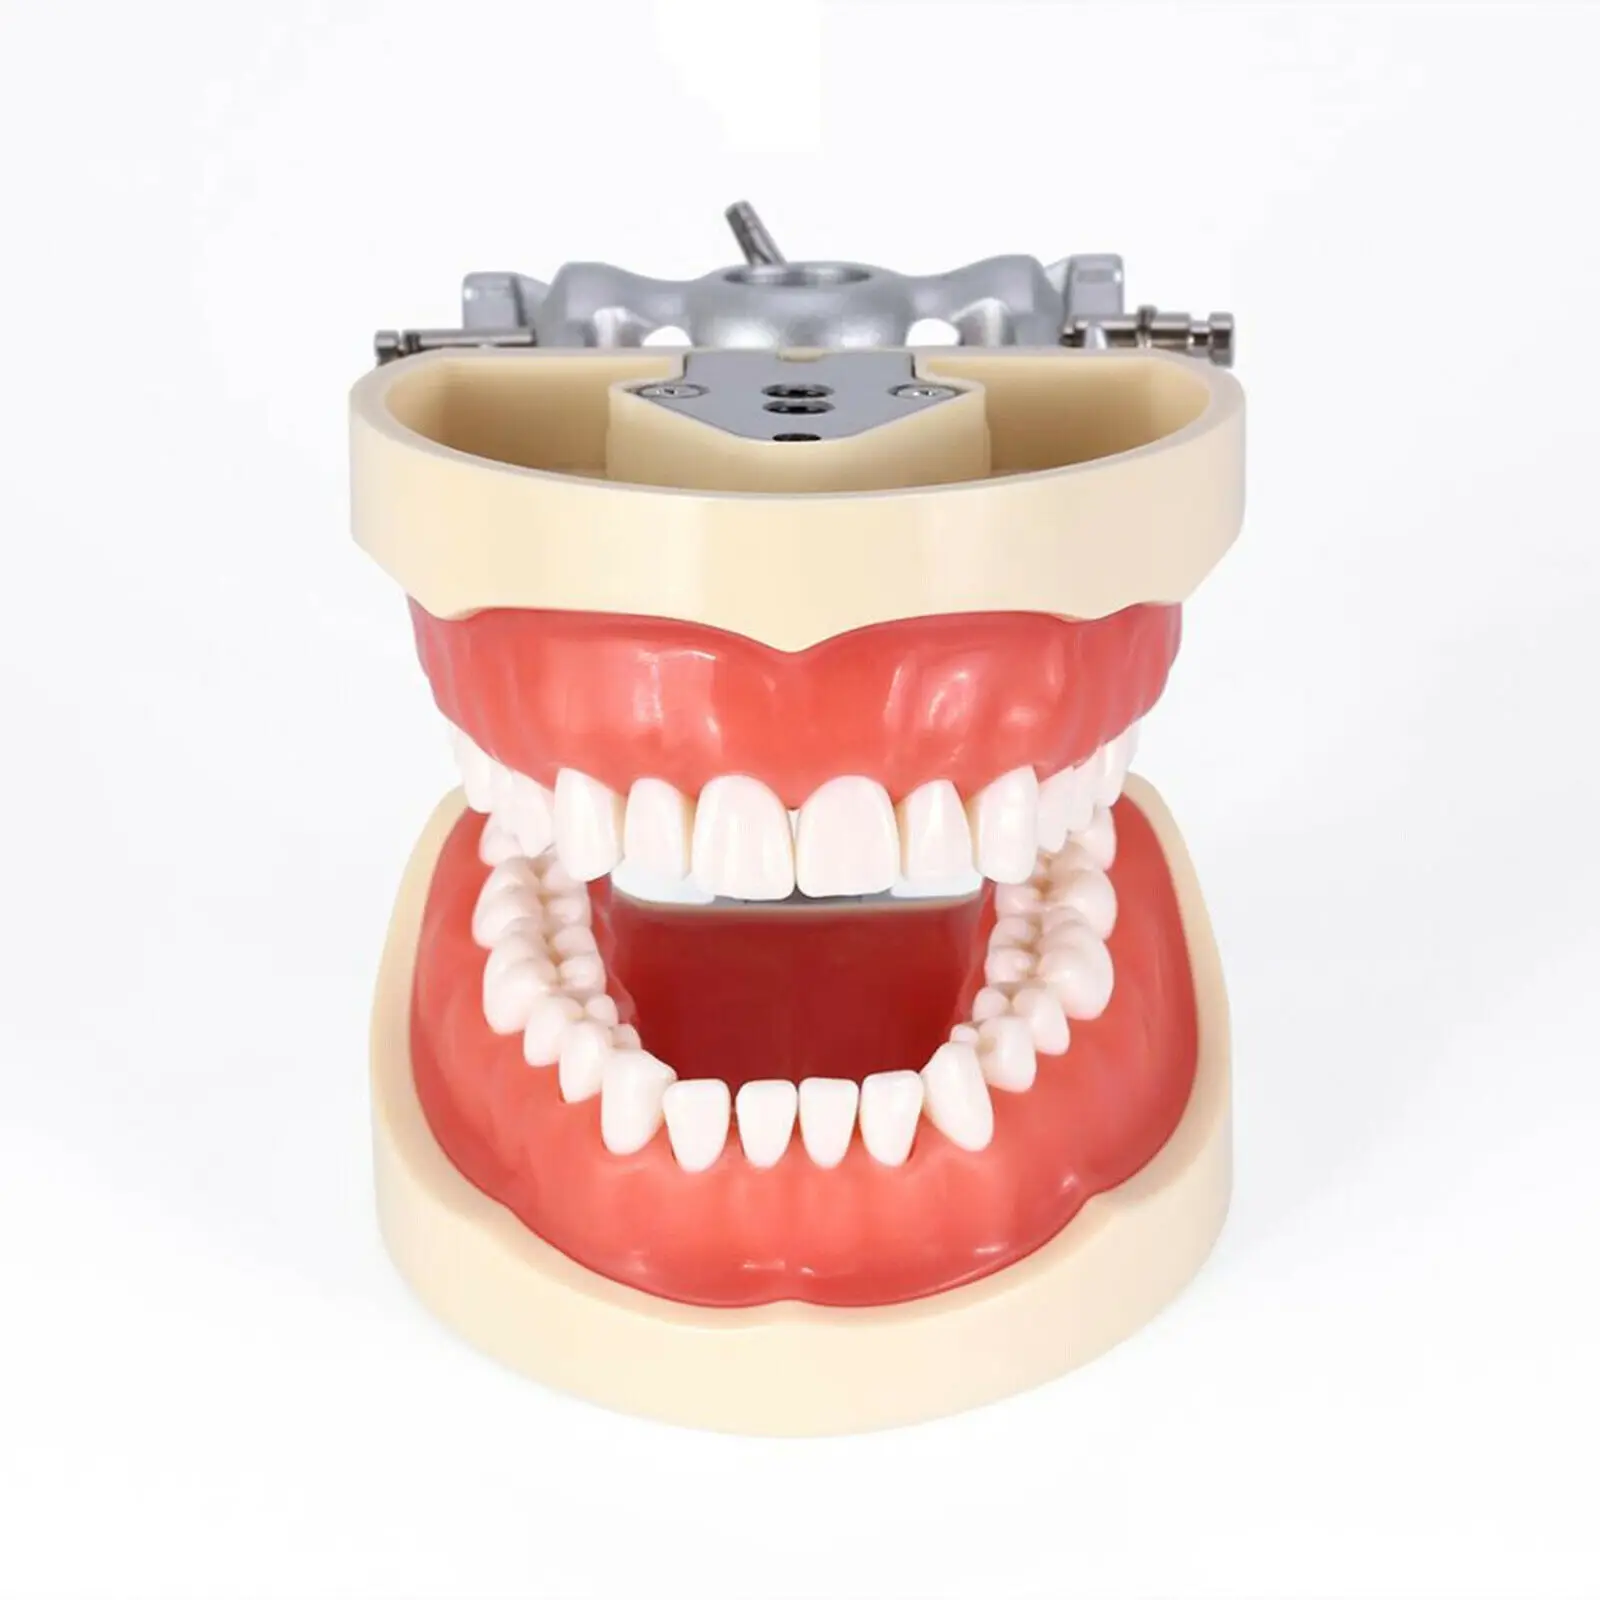 kilgore nissin tipo dental typodon modelo dentes de preparação removível pça demonstração dental modelo odontologia accesorios